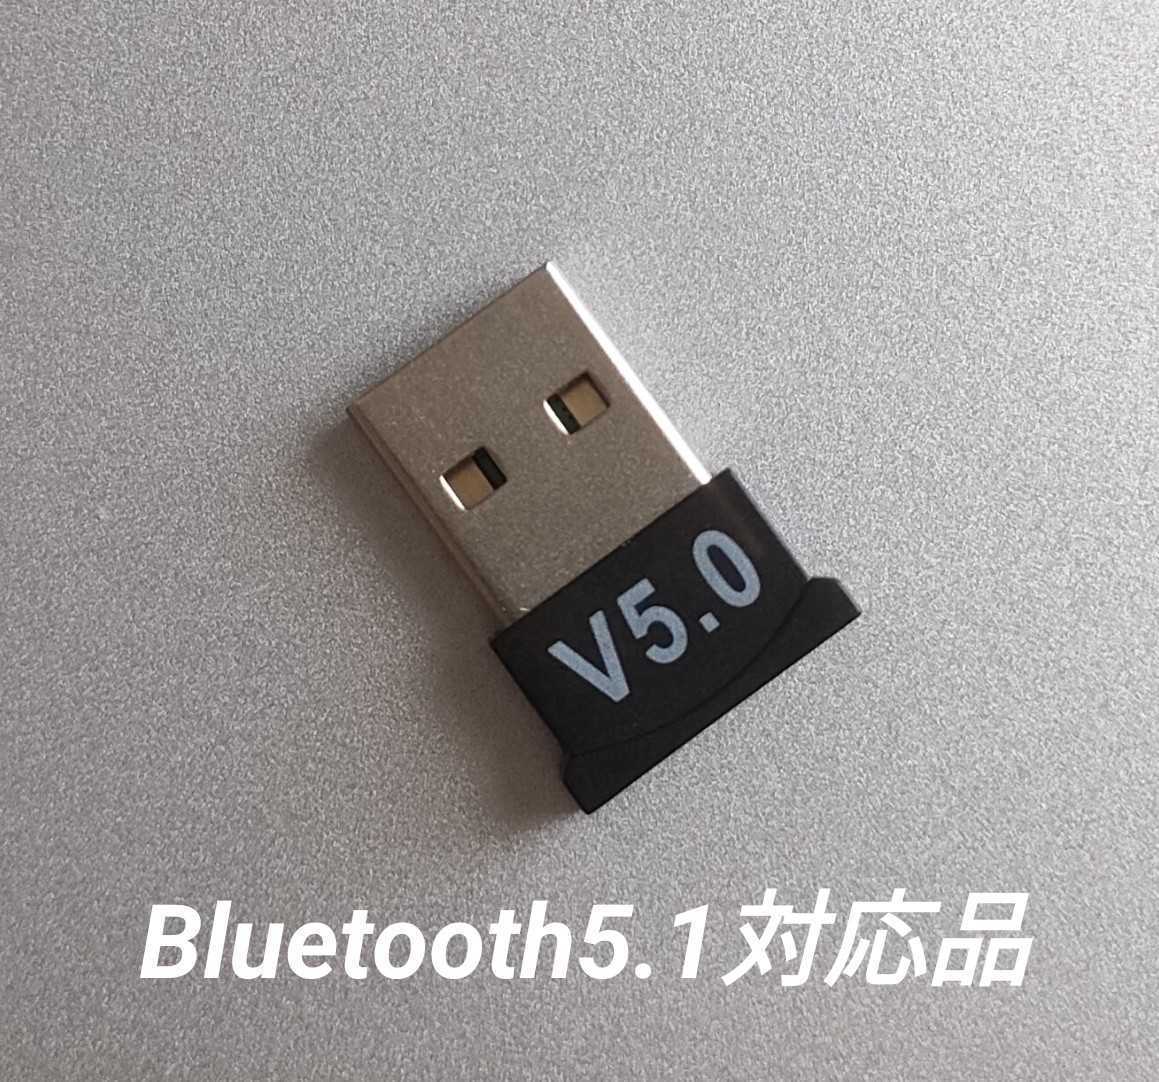 【新品未使用】 Bluetooth 5.0 USB アダプター 【Bluetooth5.1チップ搭載品】の画像2